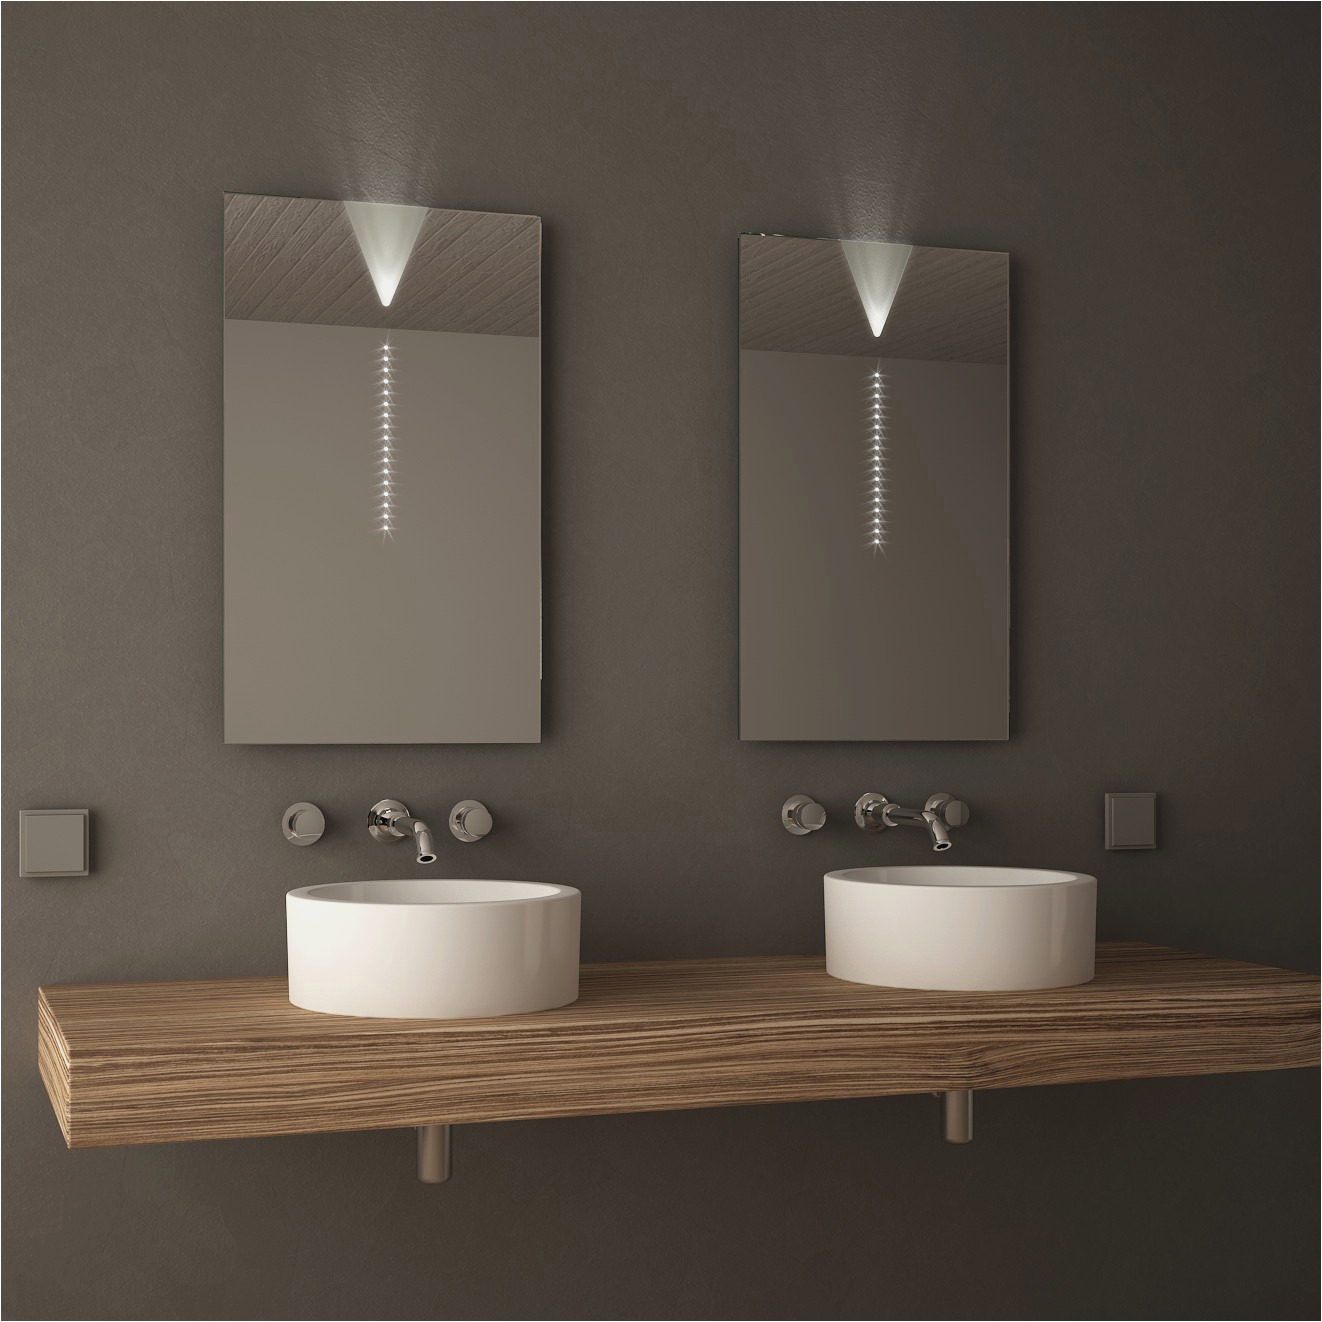 spiegel fur badezimmer elegant badezimmerspiegel led lampe of spiegel fur badezimmer